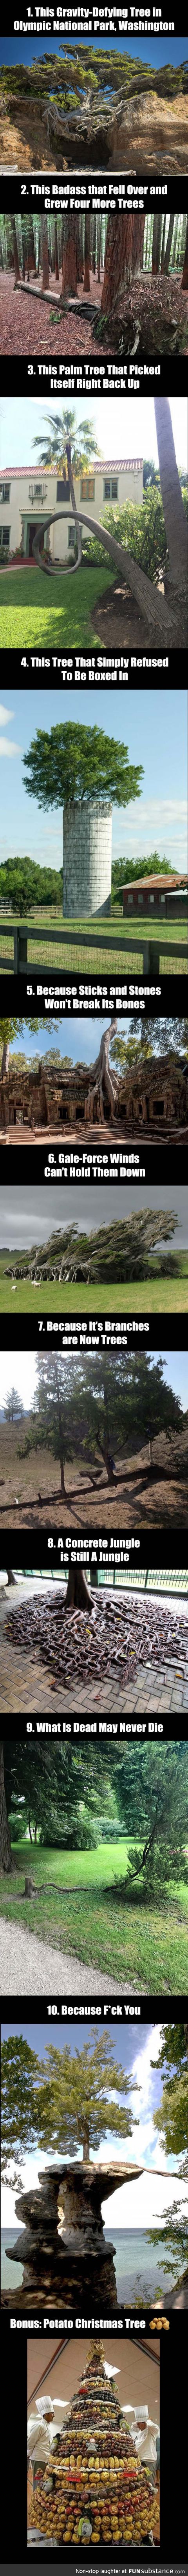 10 Badass trees that refused to die